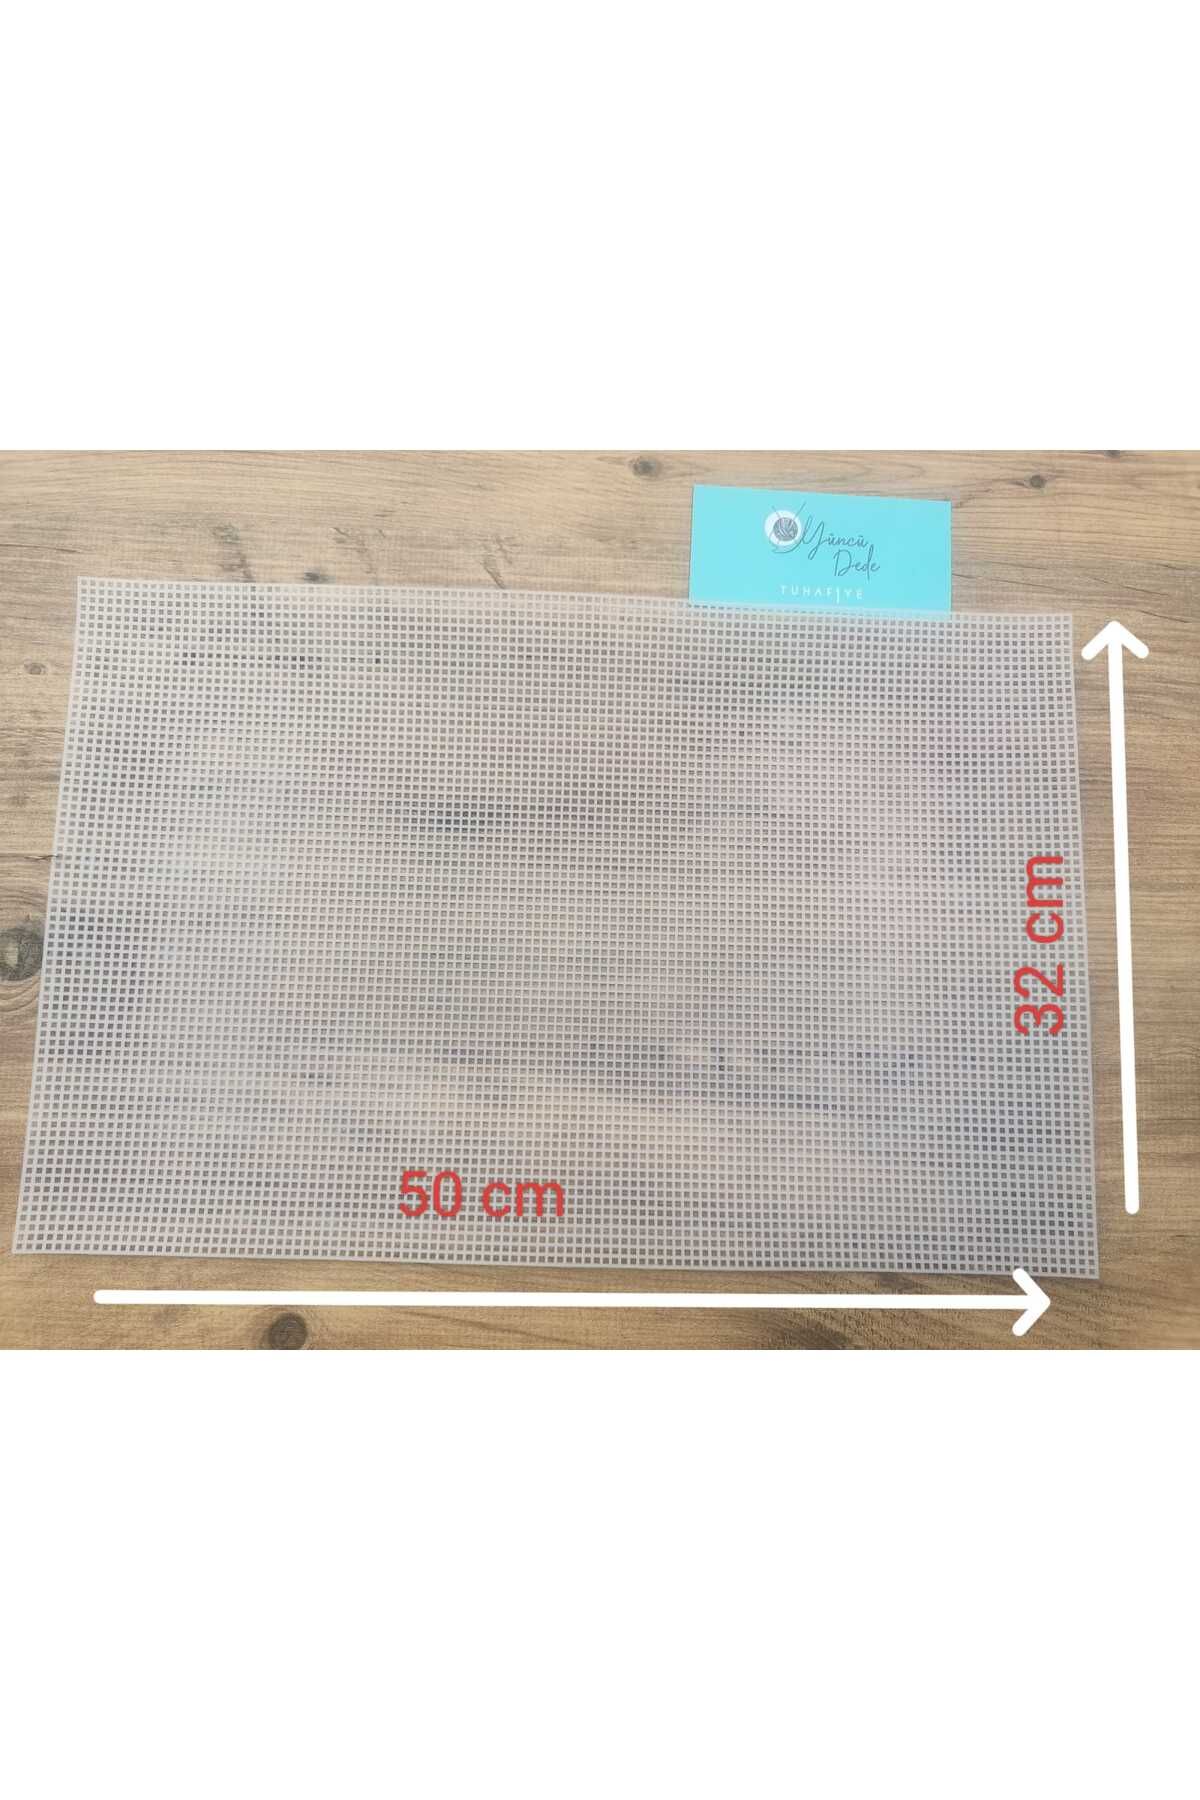 Yüncü Dede Örgü Çanta Yapımı Için Beyaz Plastik Kanvas Plaka 50x32 Cm Resimdeki Örnek Çanta Yapabilirsiniz